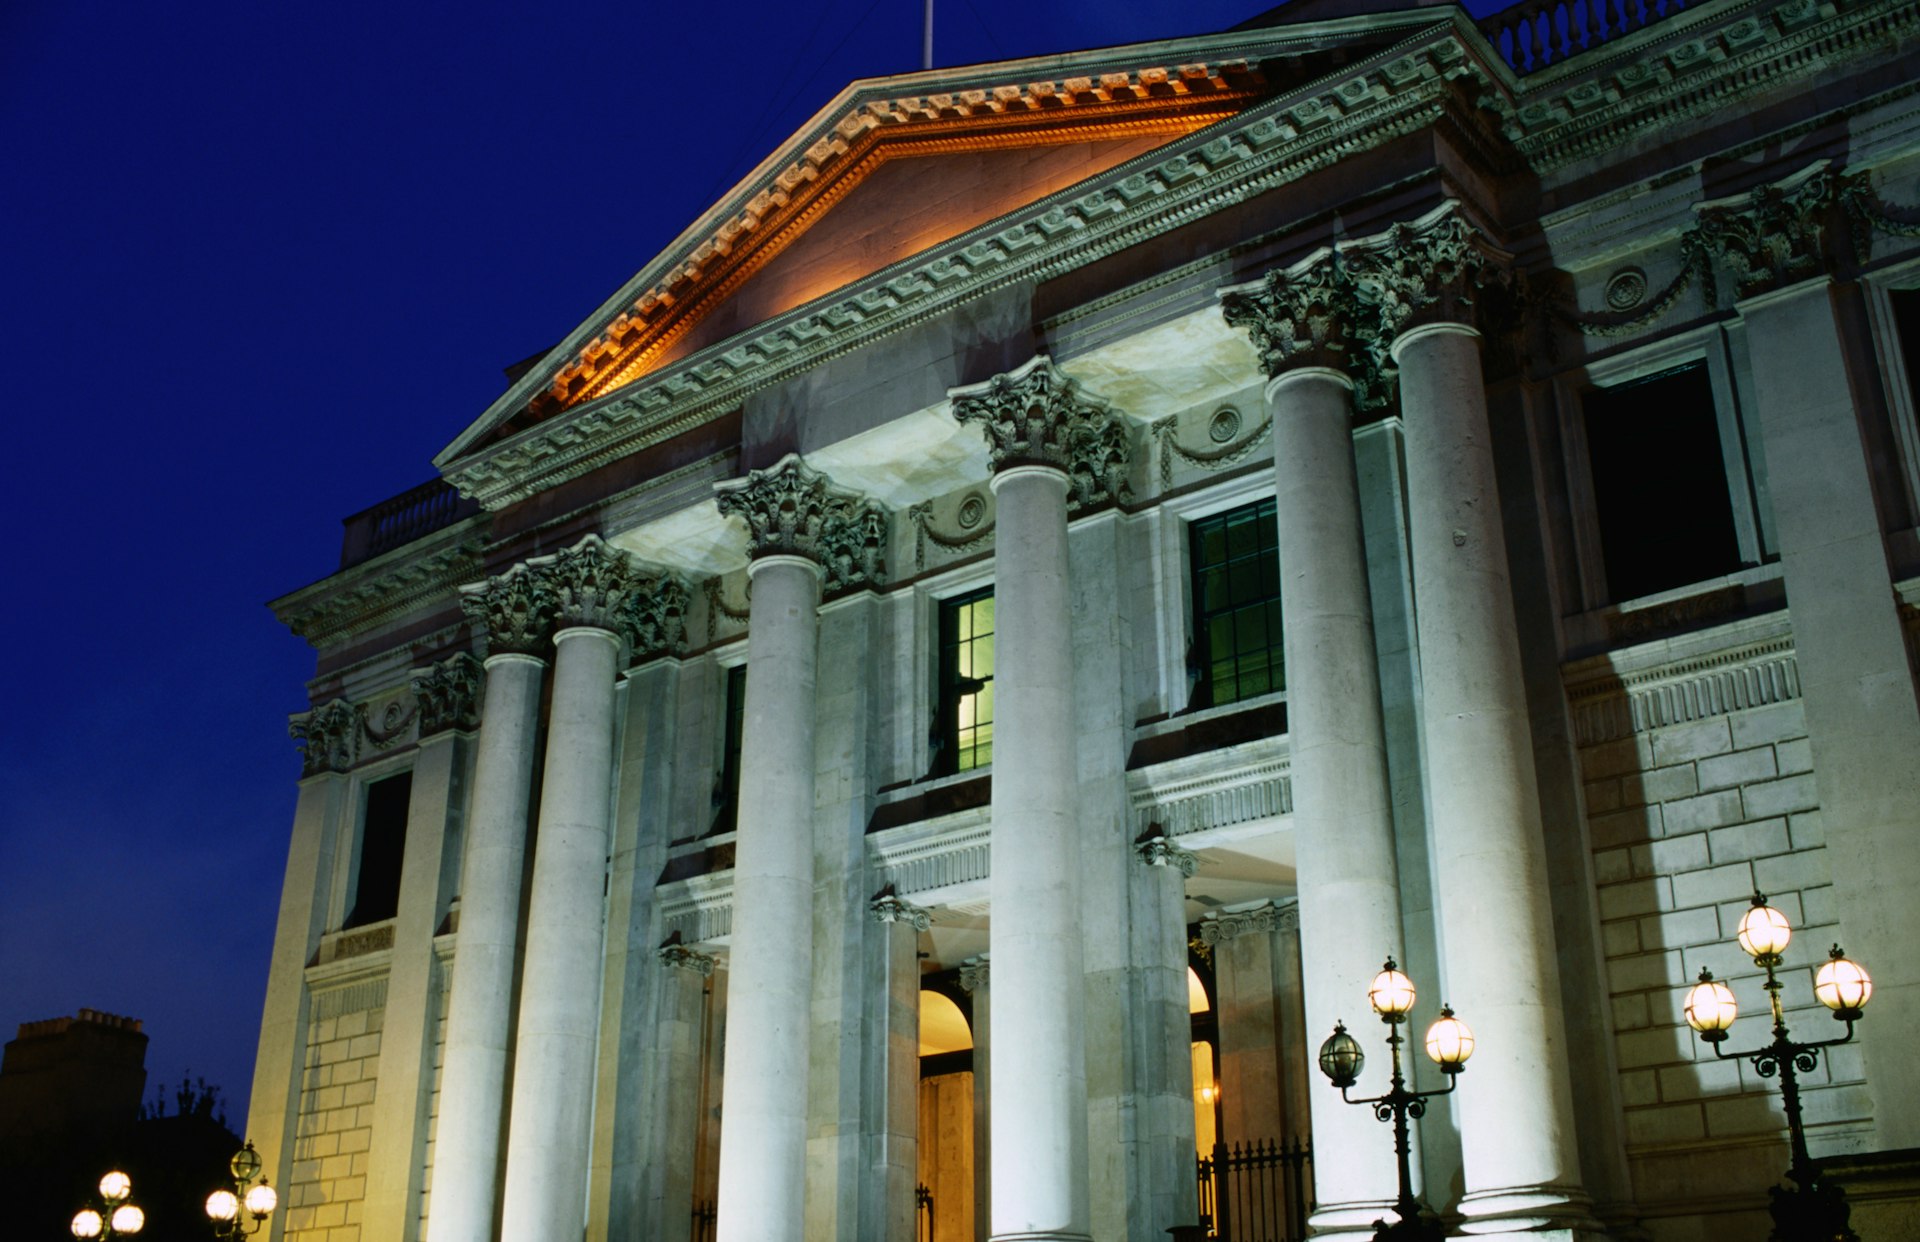 Dublin's City Hall at night